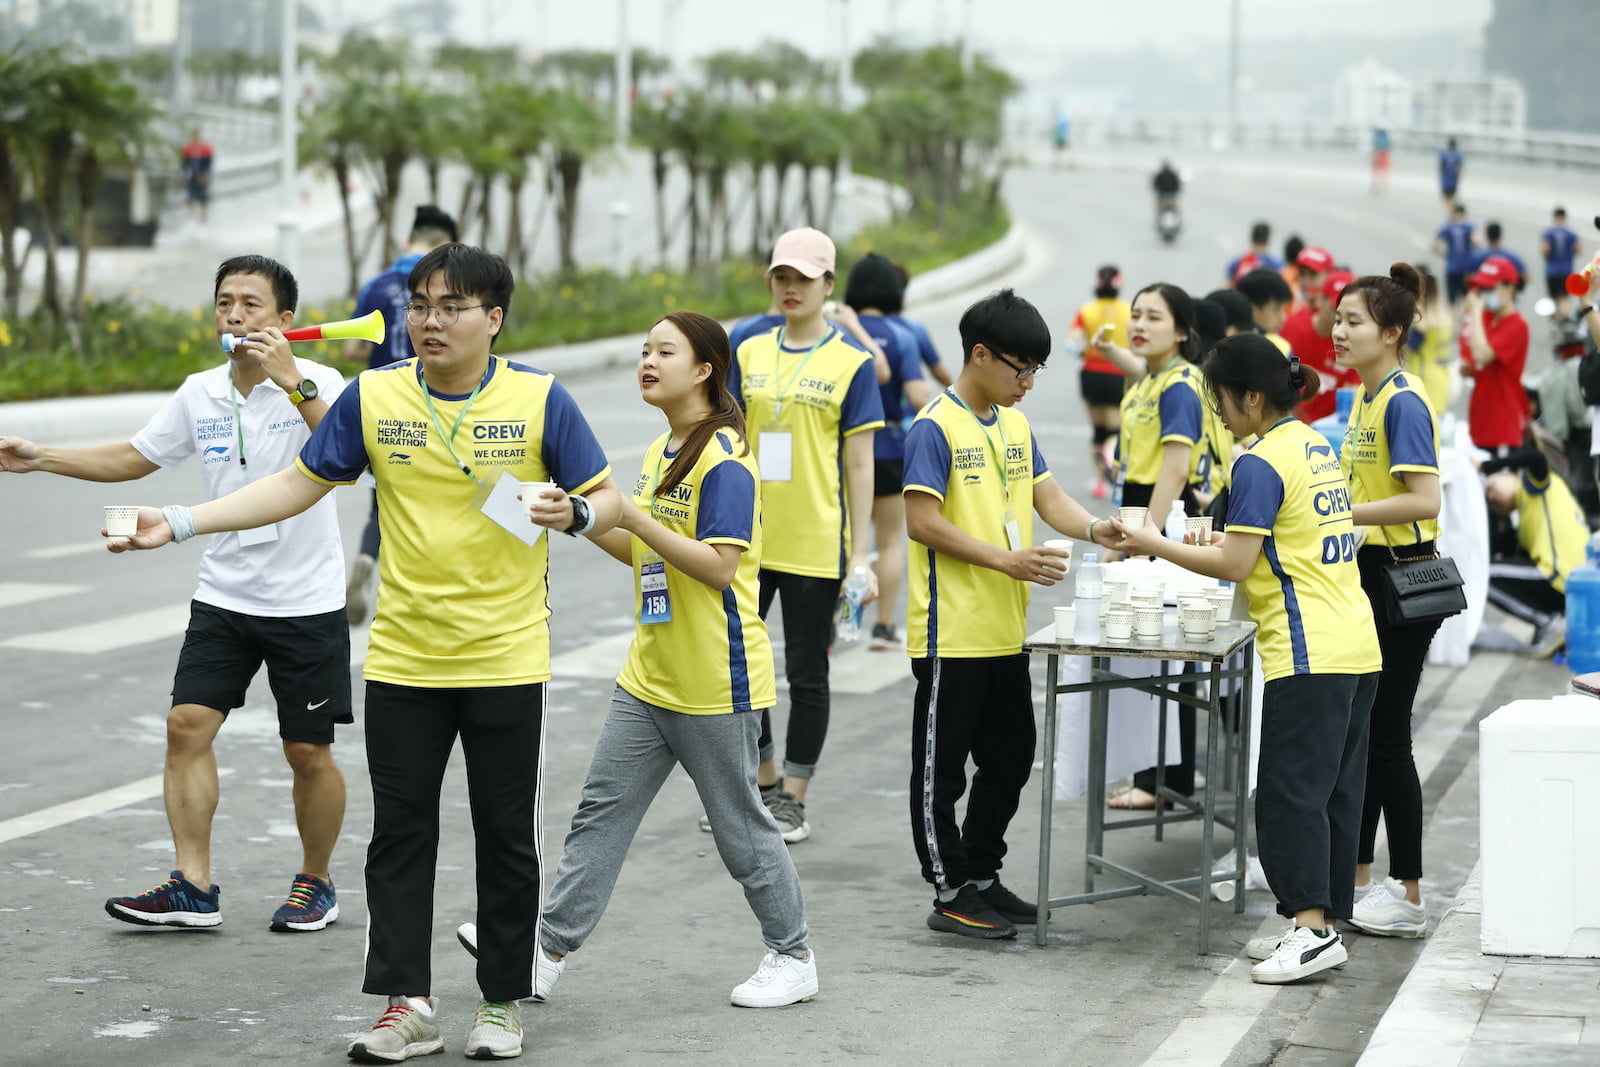 [QC] Những người bạn đồng hành đáng tin cậy trong Halong Bay Heritage Marathon 2020 - halong bay heritage marathon 2020 2